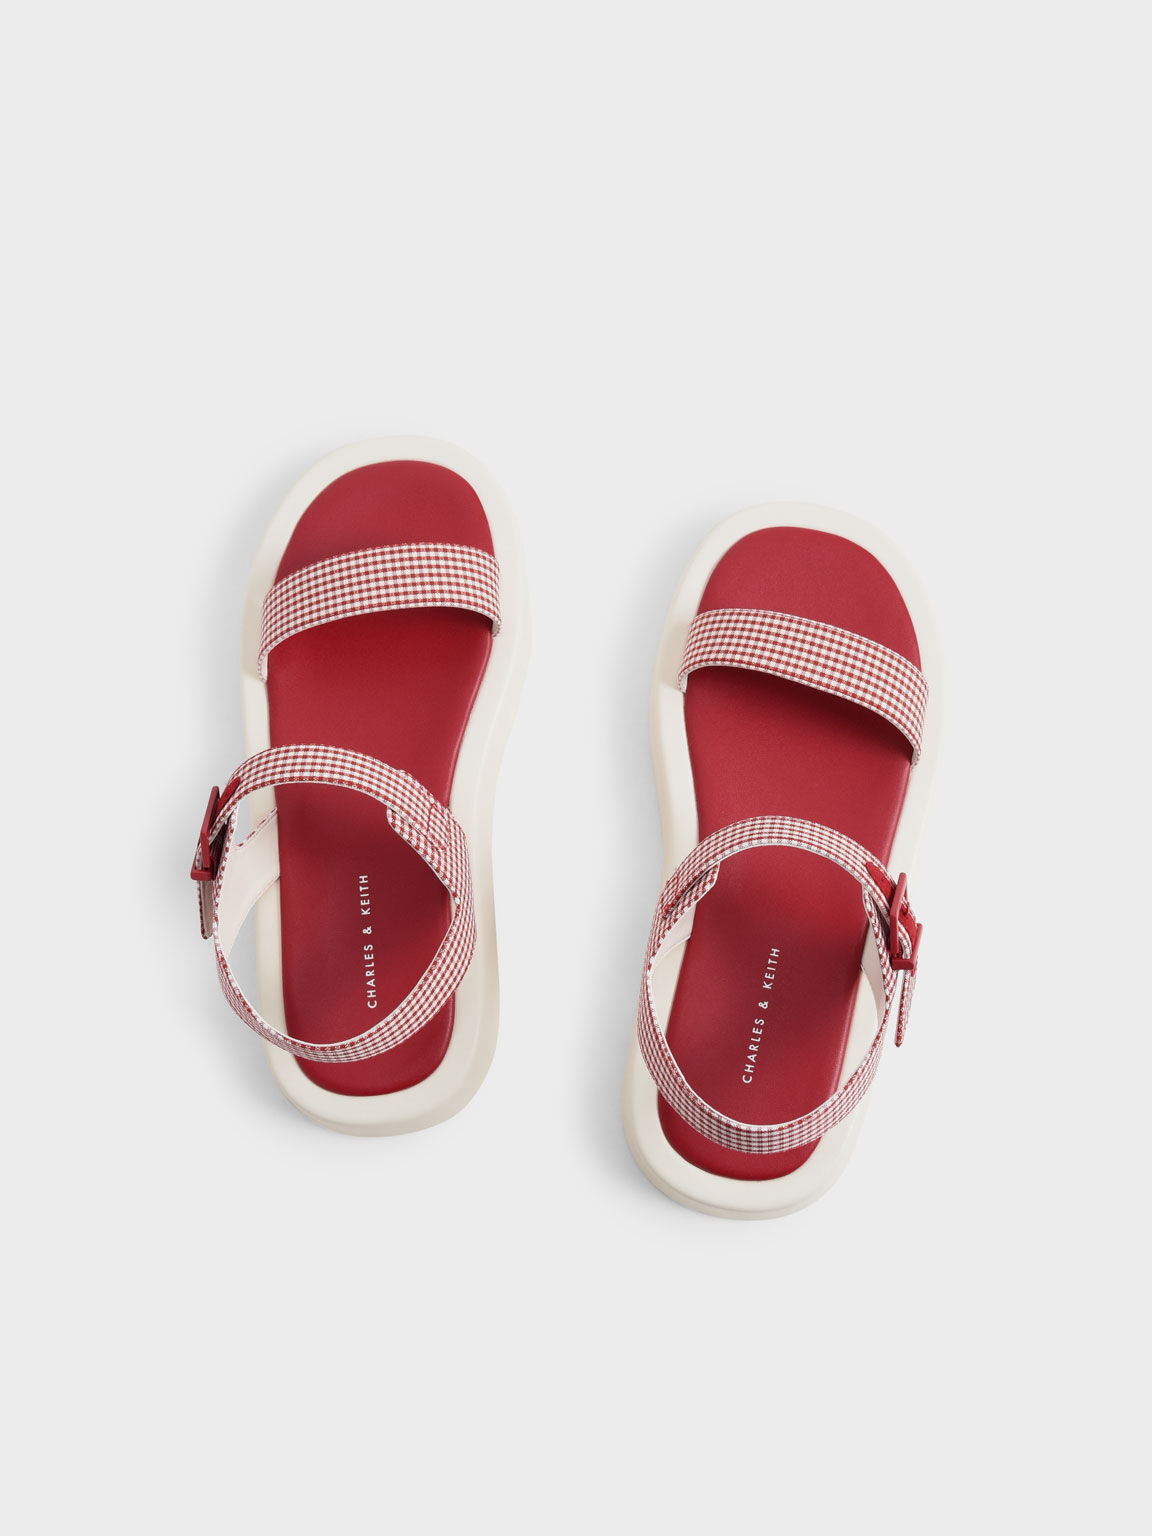 Sandal Flatform Check-Print, Red, hi-res